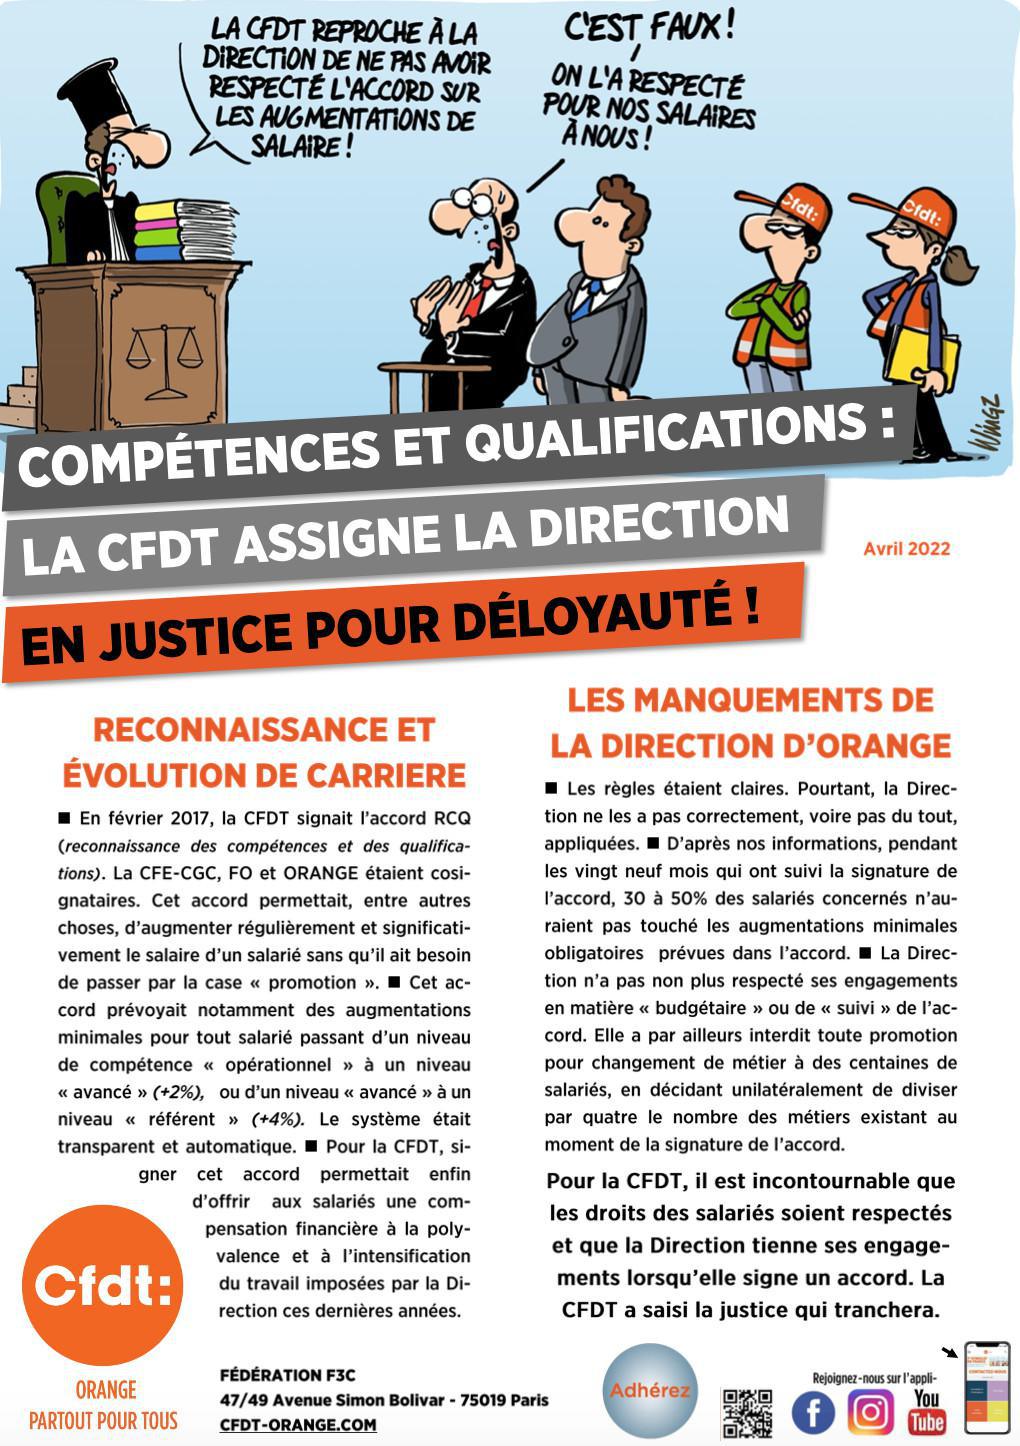 Compétences et qualifications : la CFDT assigne la Direction en justice pour déloyauté ! - Avril 2022 -